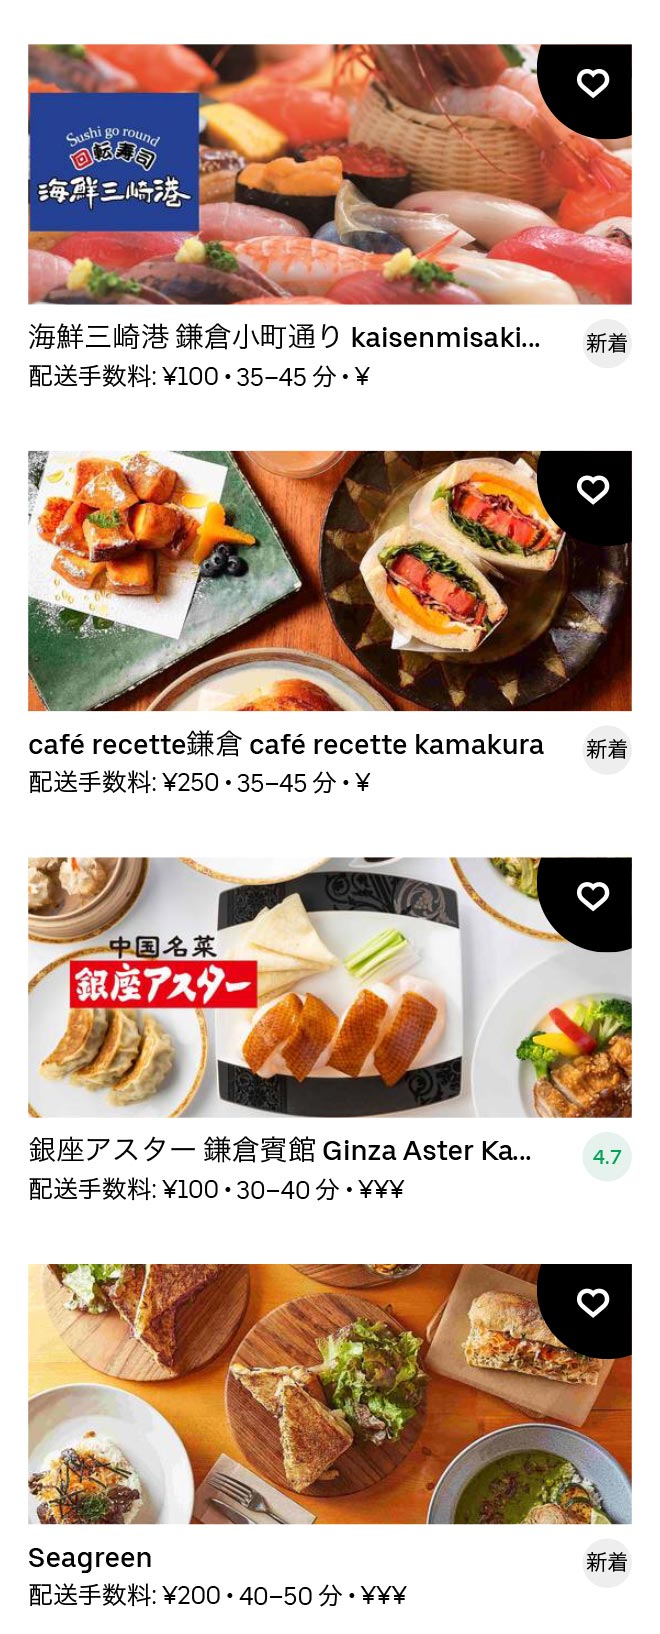 Kamakura menu 2012 08